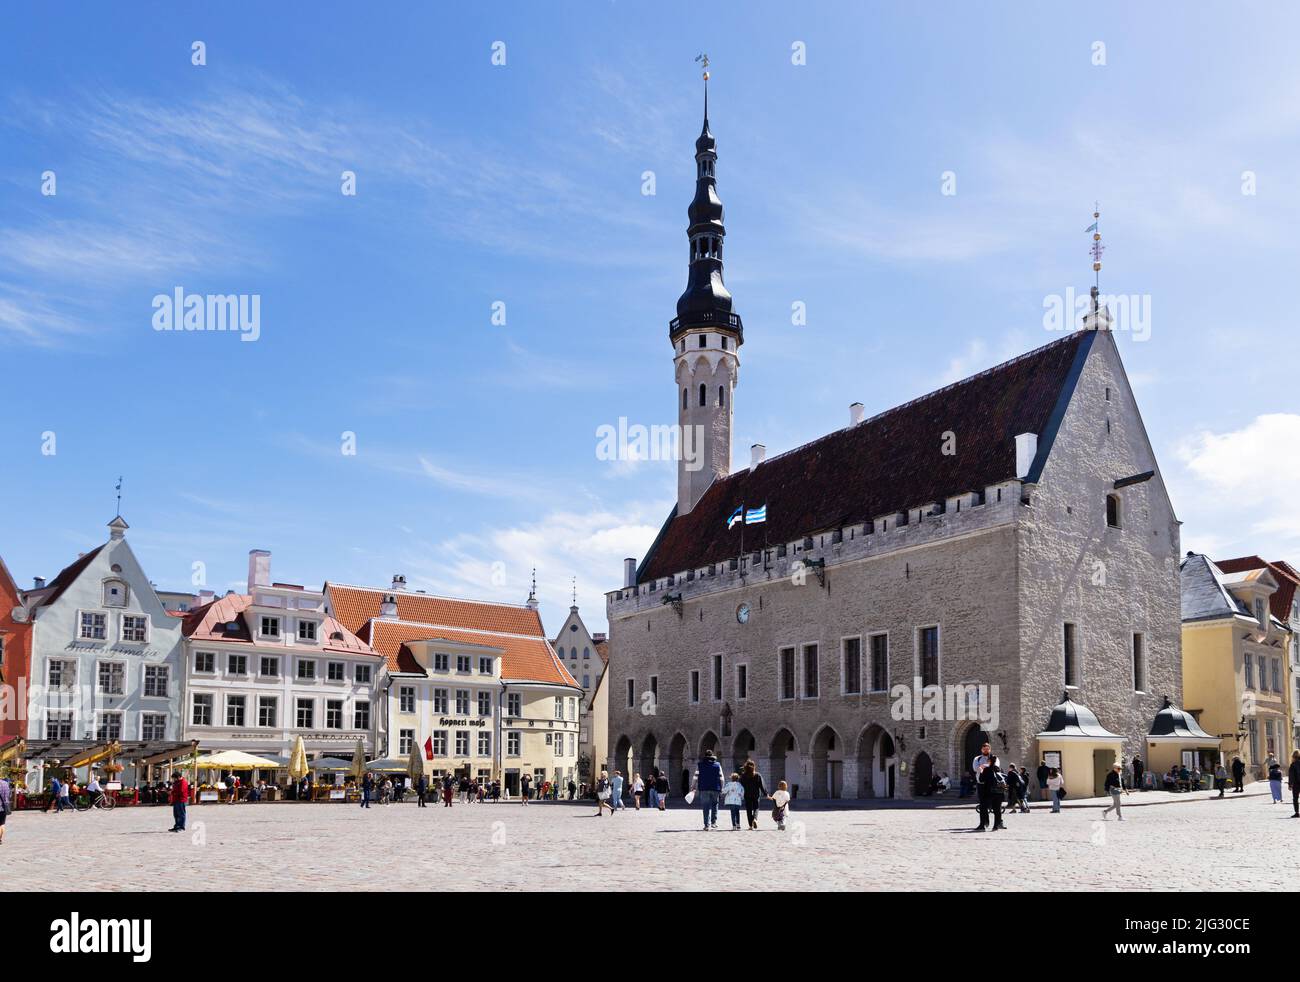 Der Altstädter Rathausplatz von Tallinn und das Rathaus aus dem Jahr 1500s, heute ein beliebtes Touristenziel für Reisen und Städtereise, Tallinn Estland Stockfoto